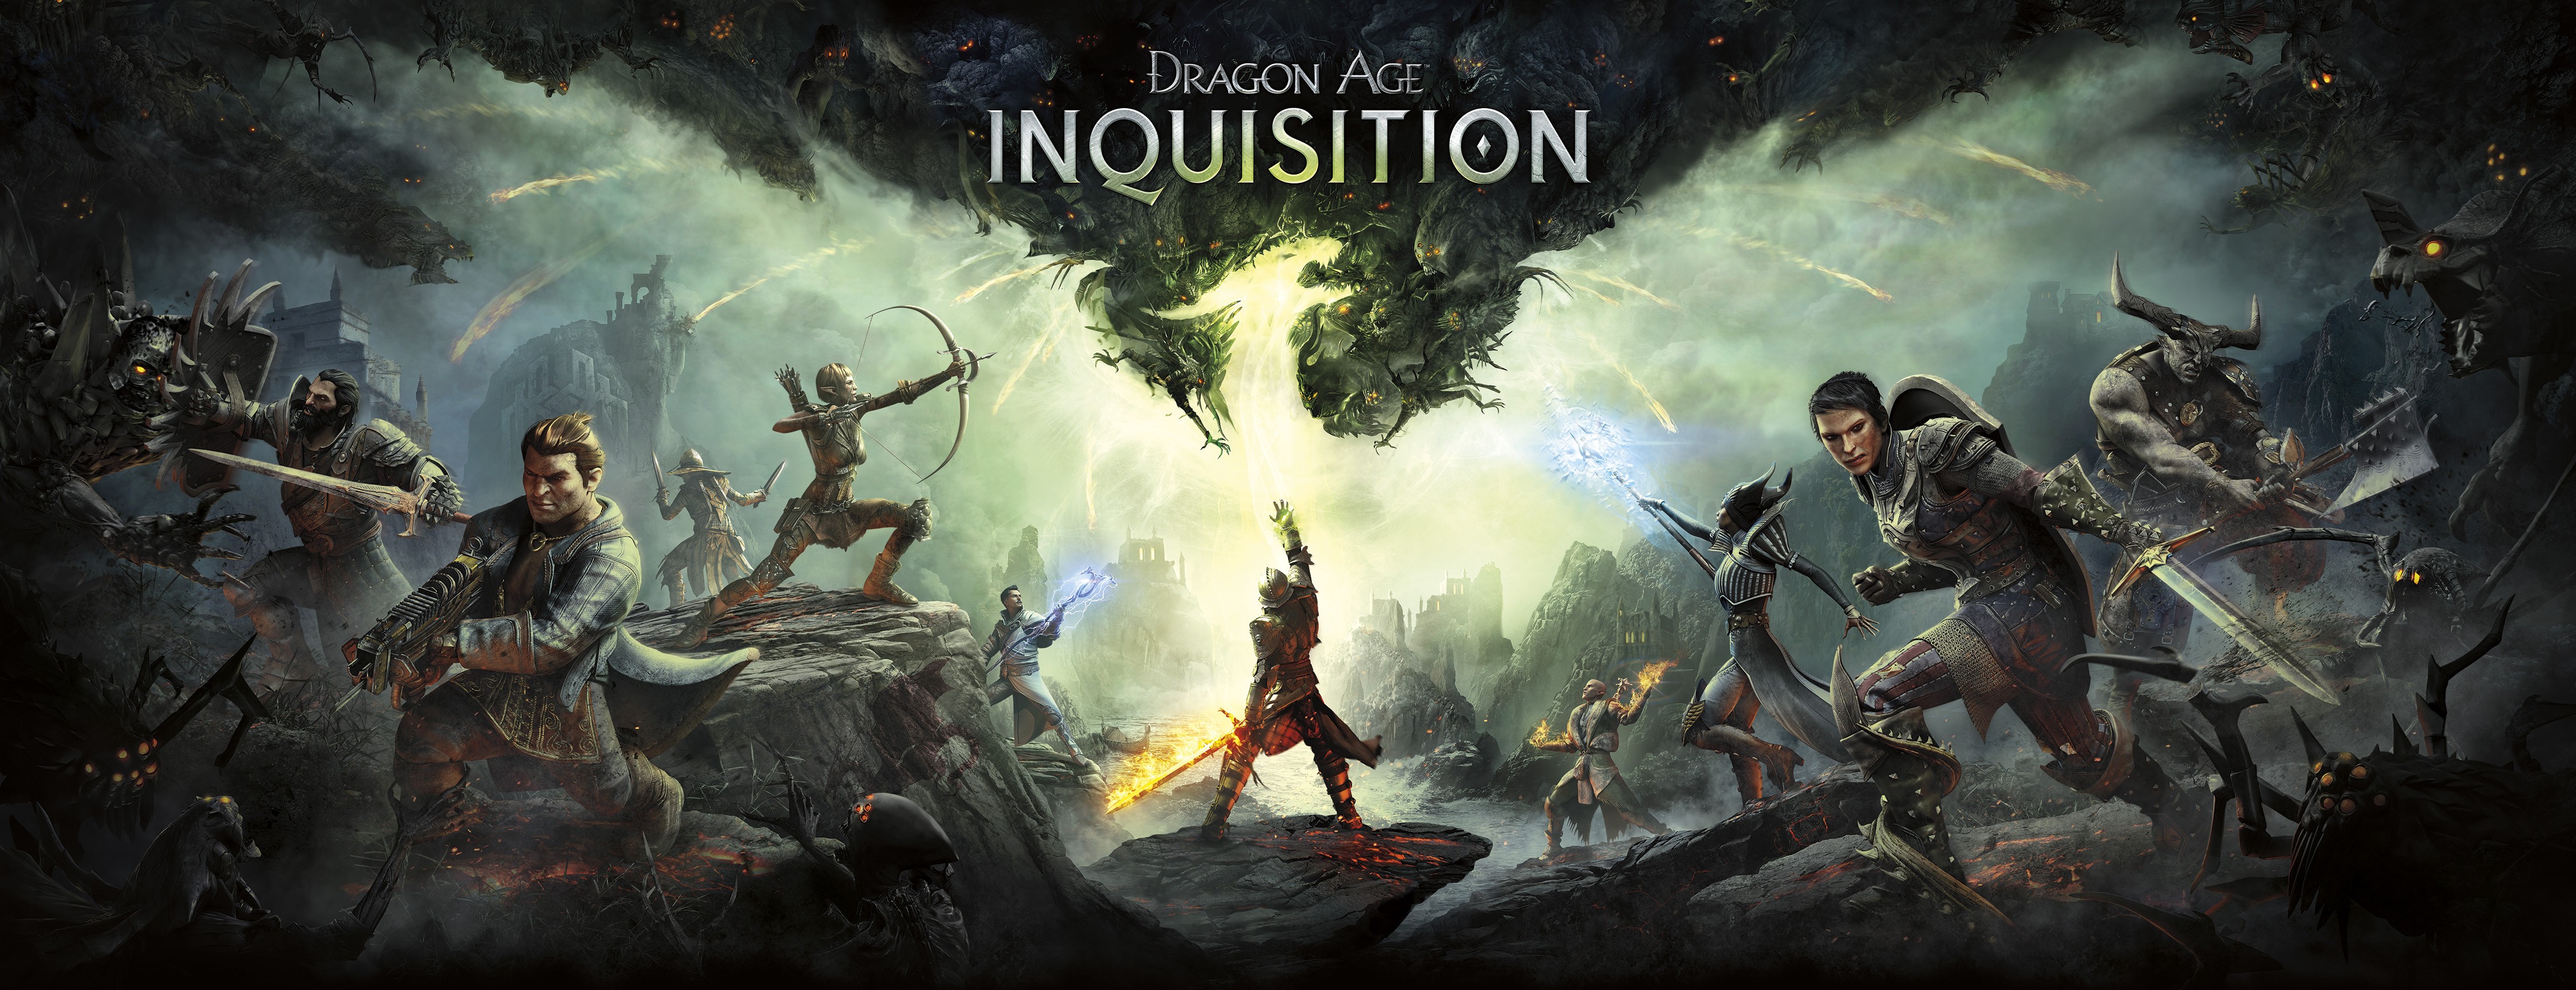 dragon age: inquisition, video game, dragon, magic, sword, dragon age